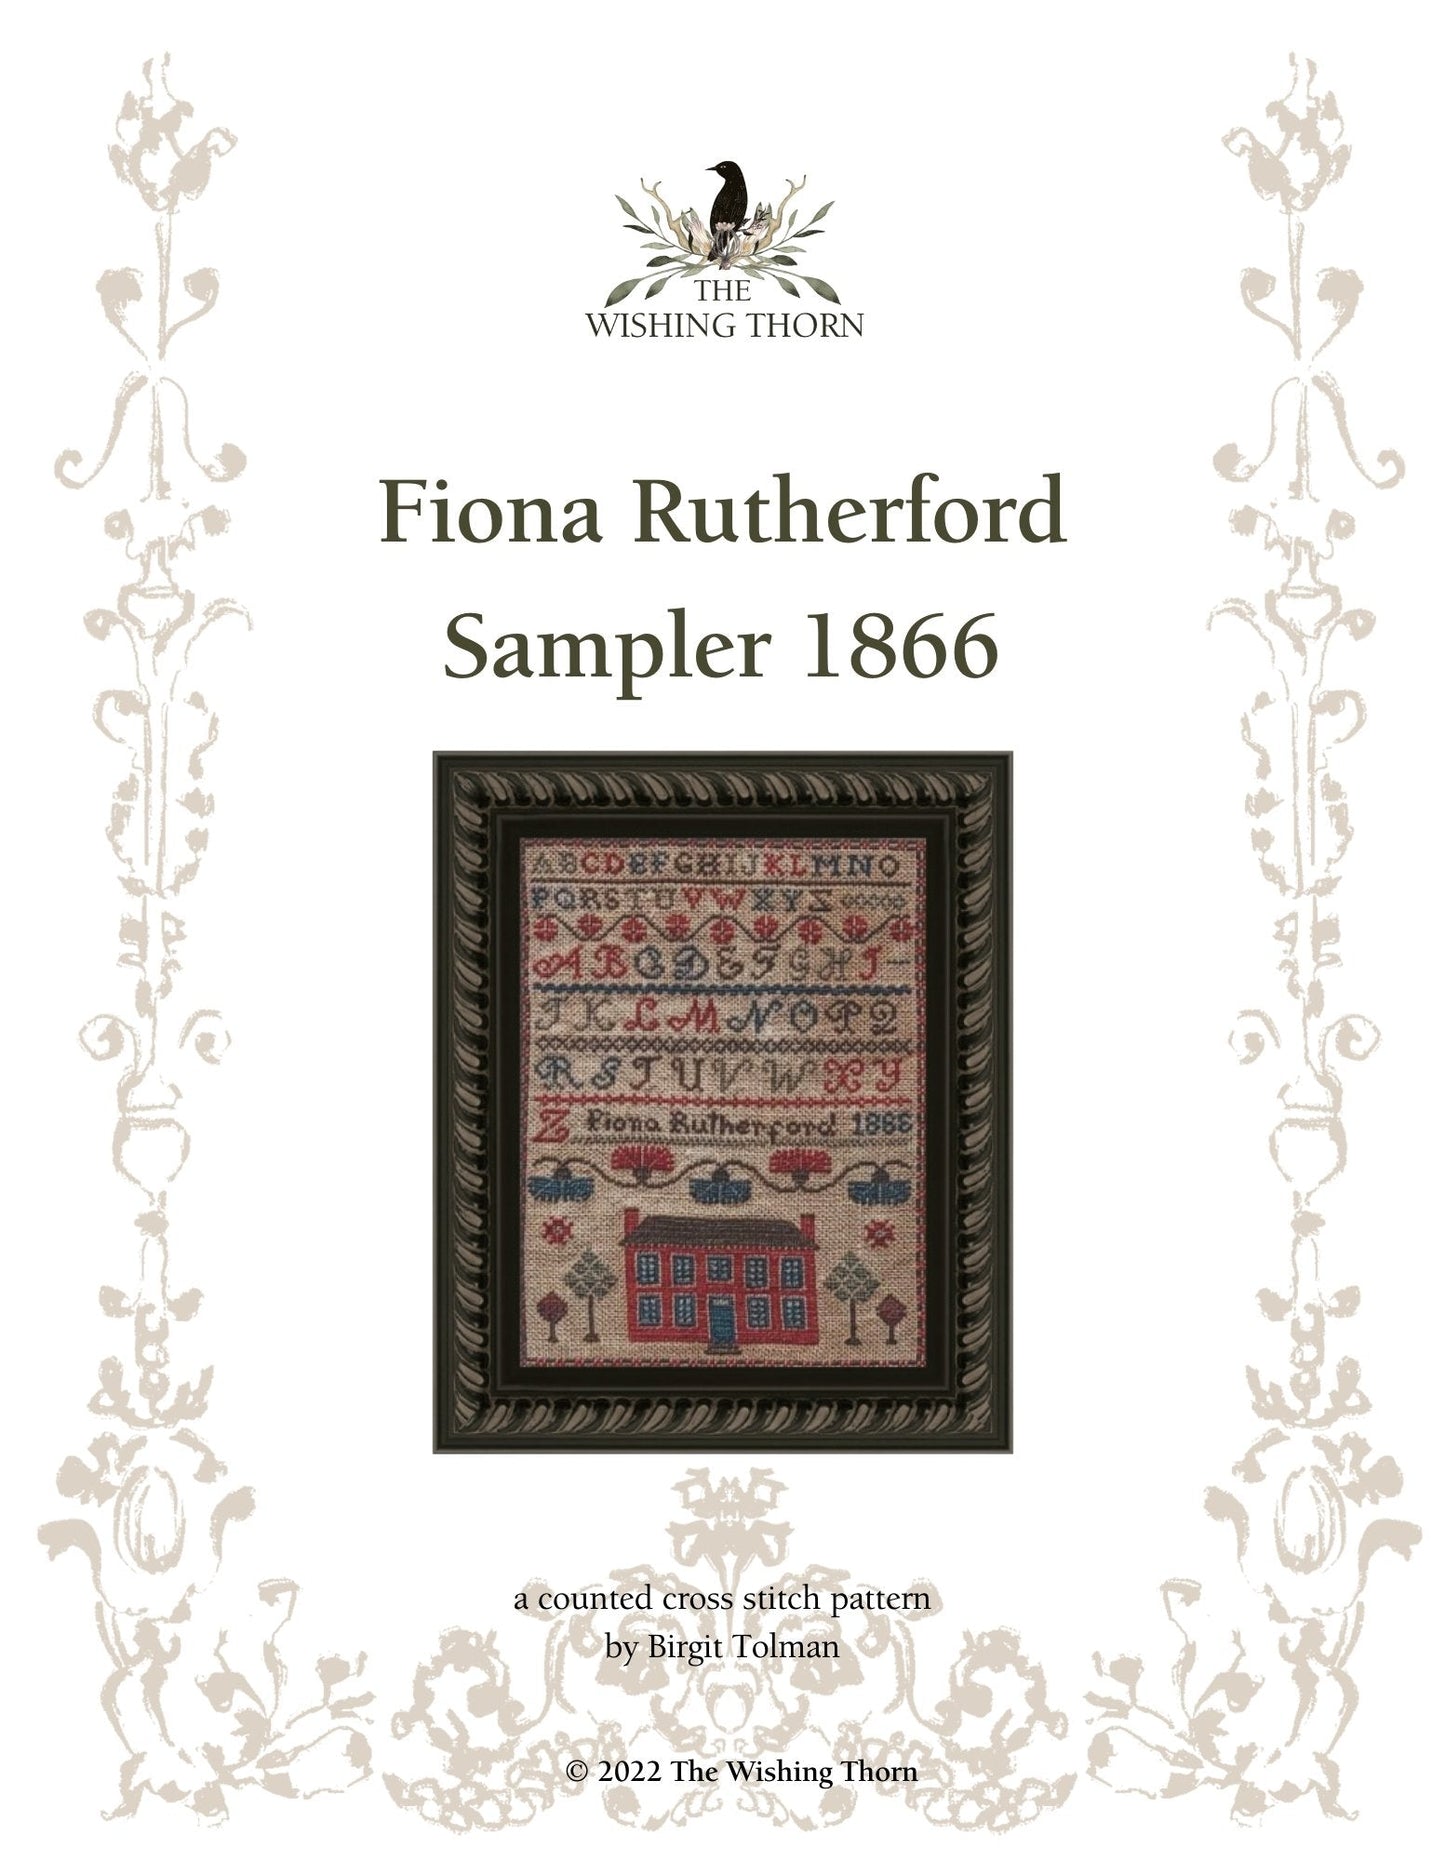 Fiona Rutherford 1866 Sampler Kit